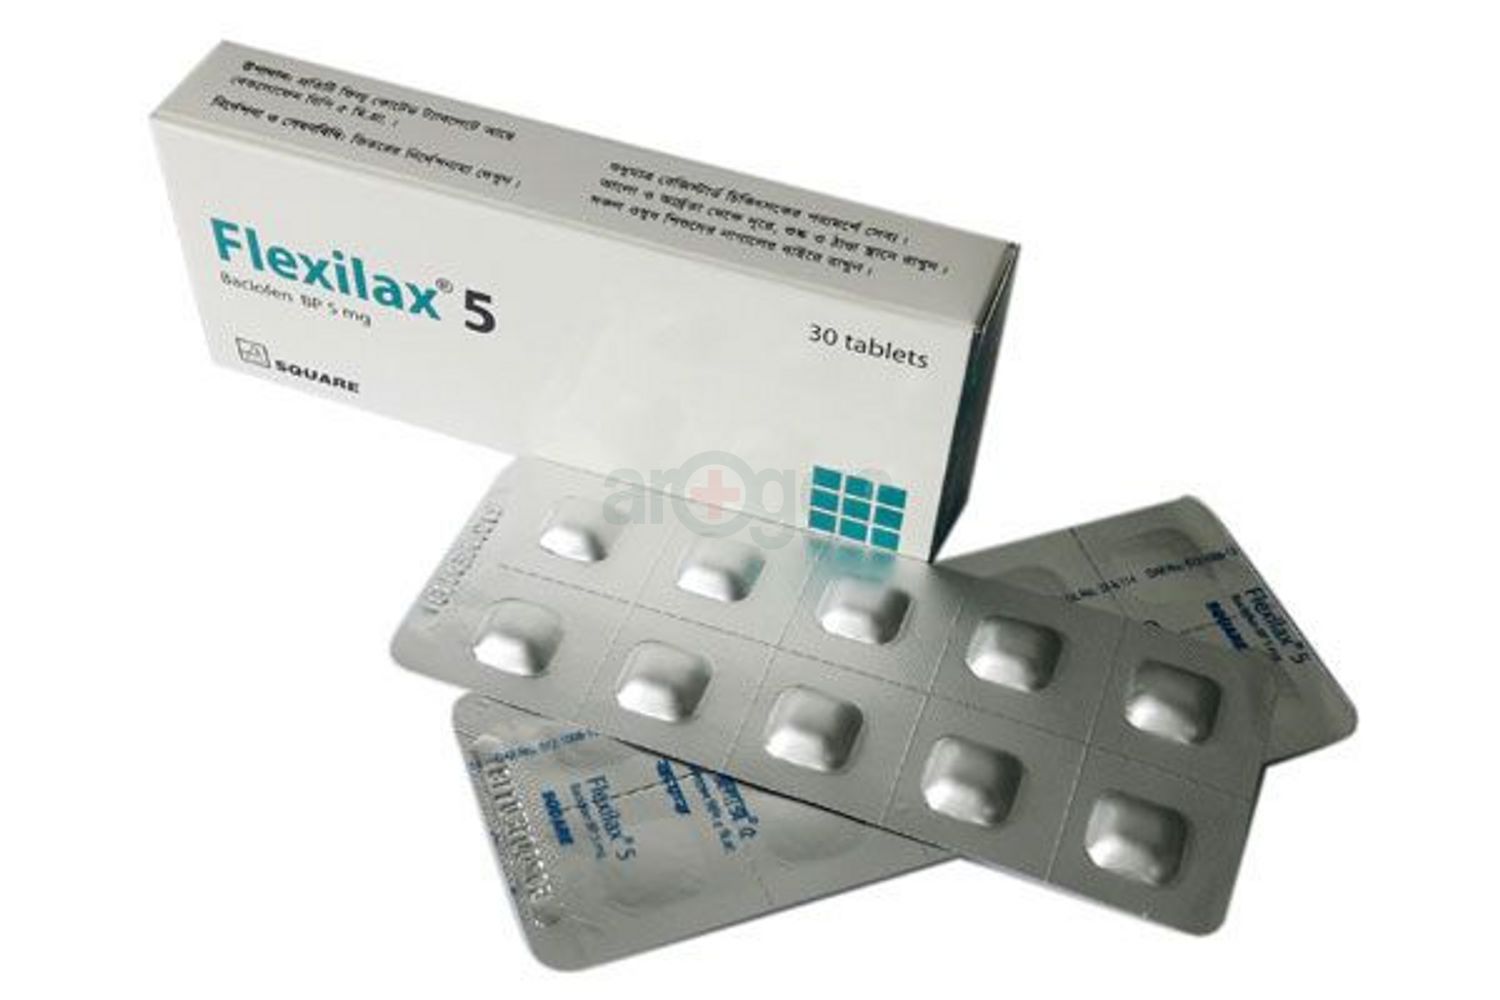 Flexilax 5